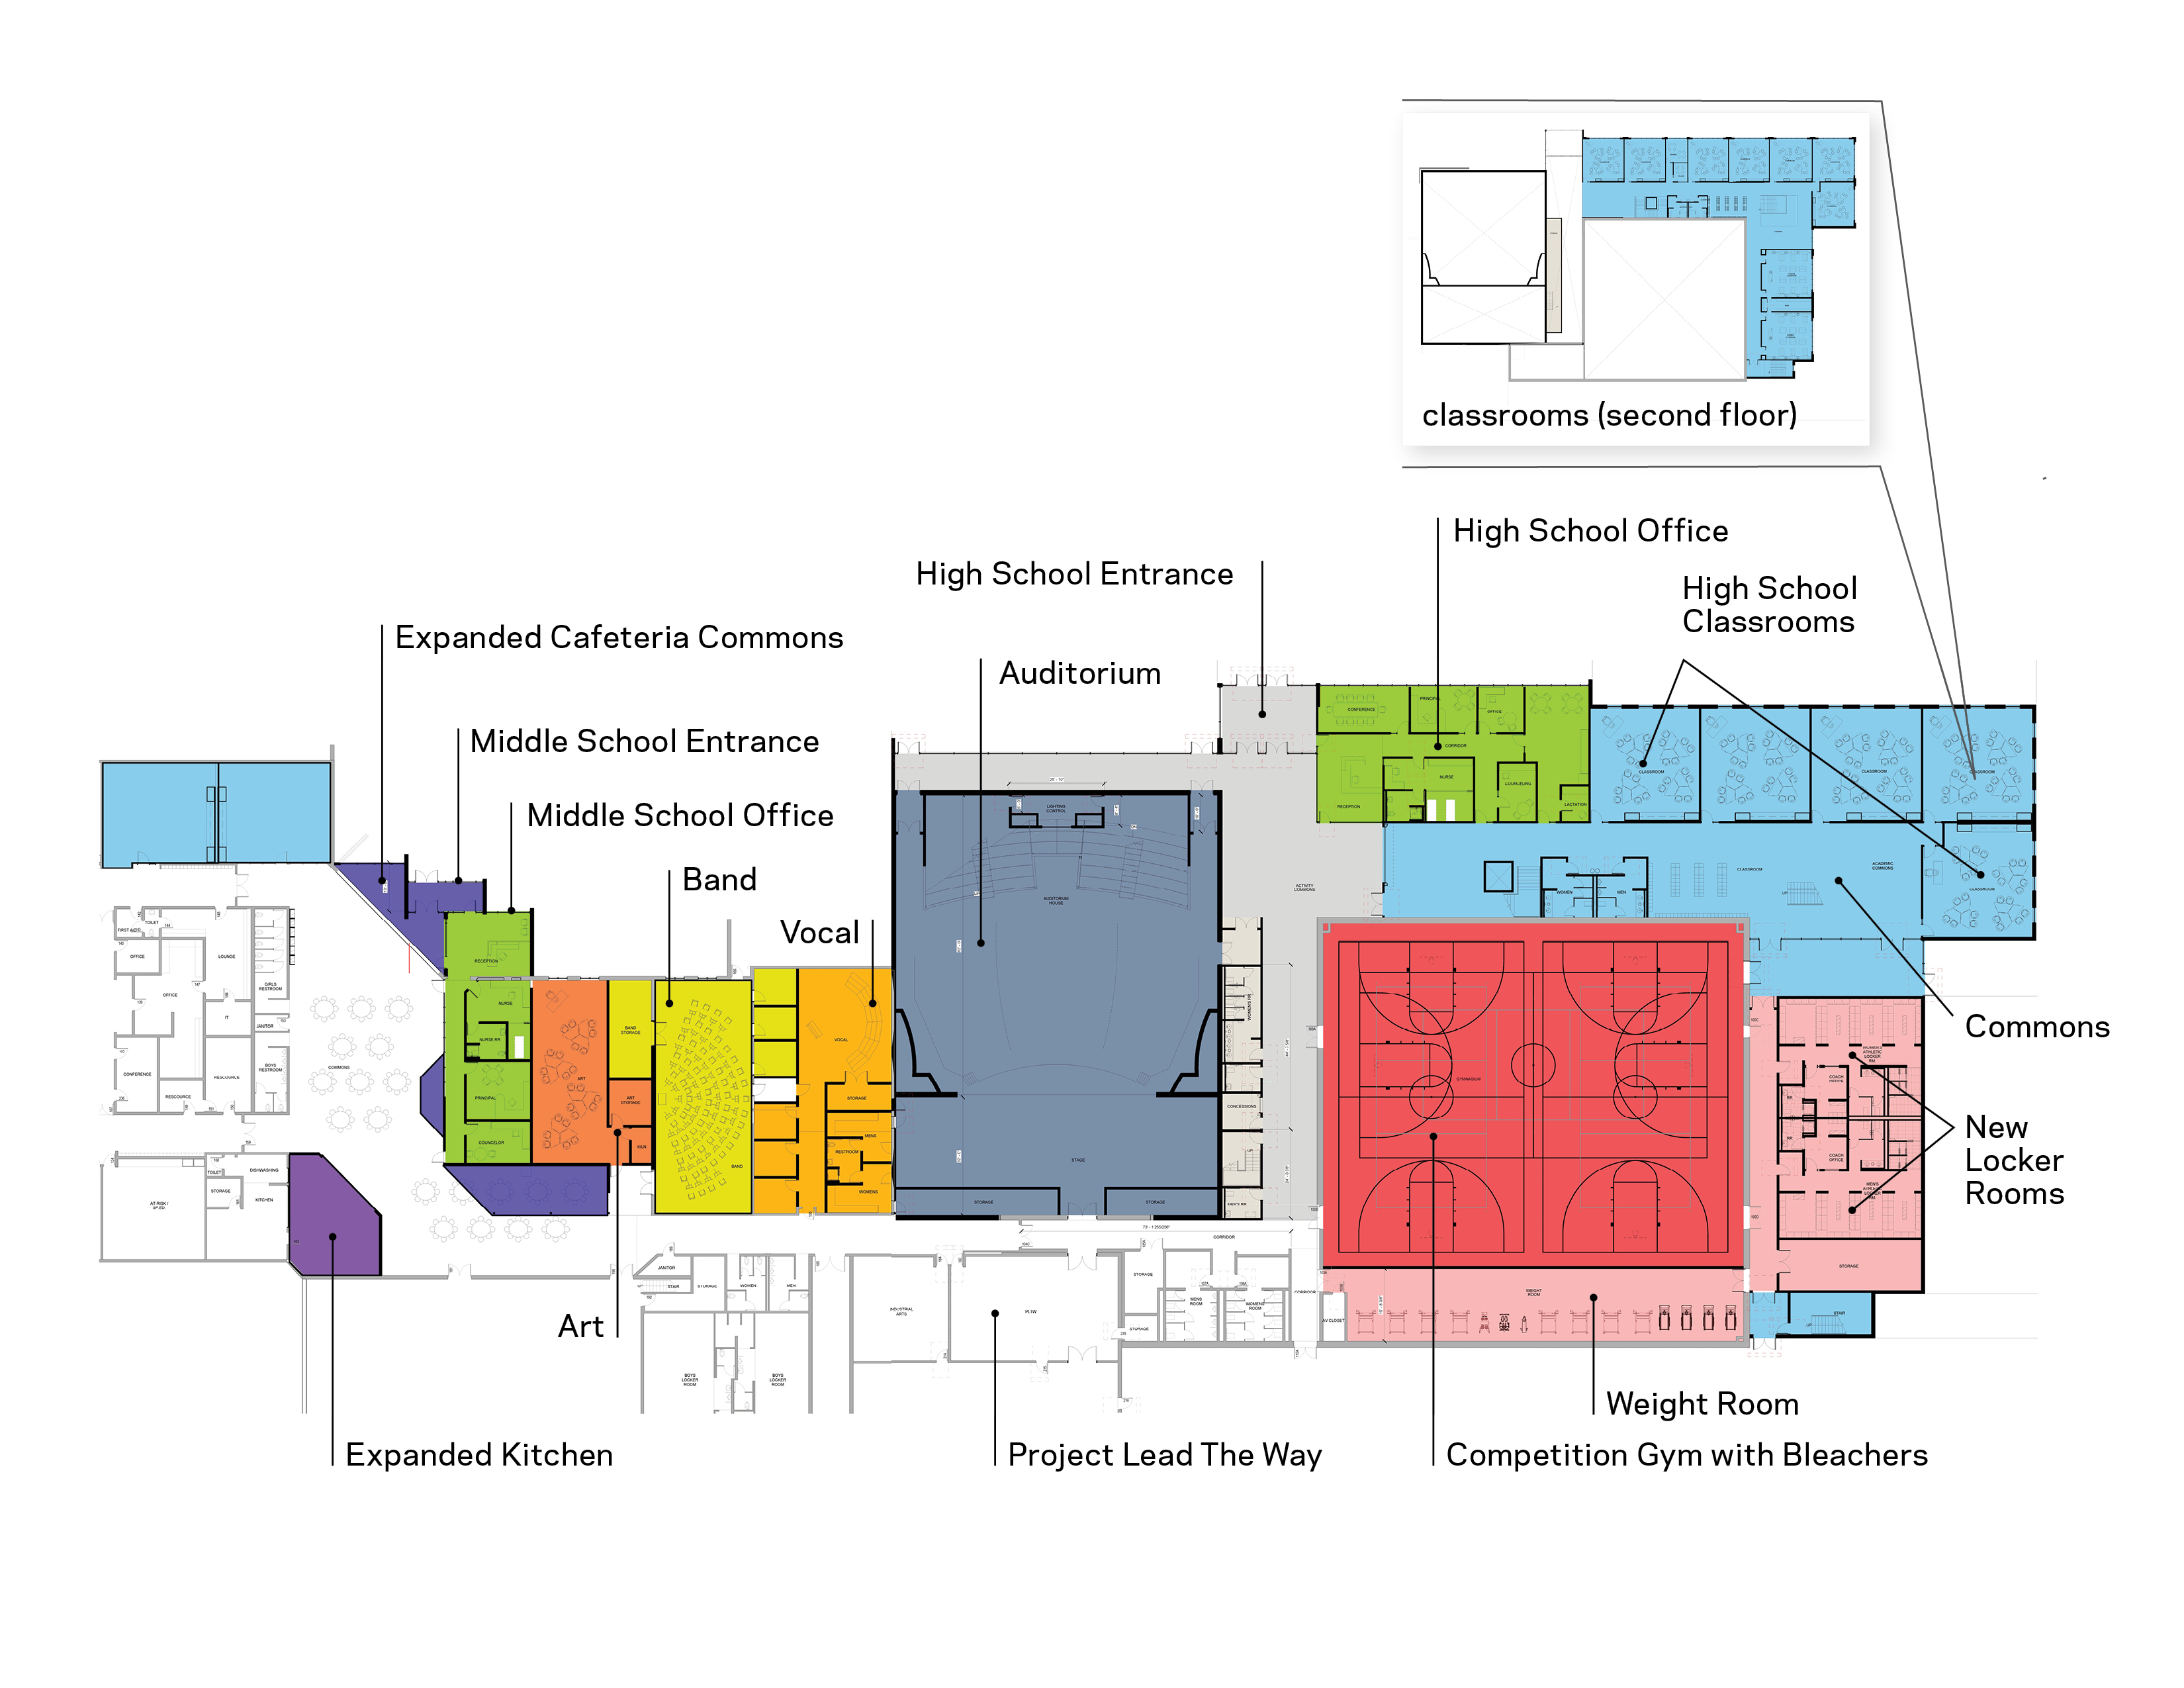 High school renovation floor plan